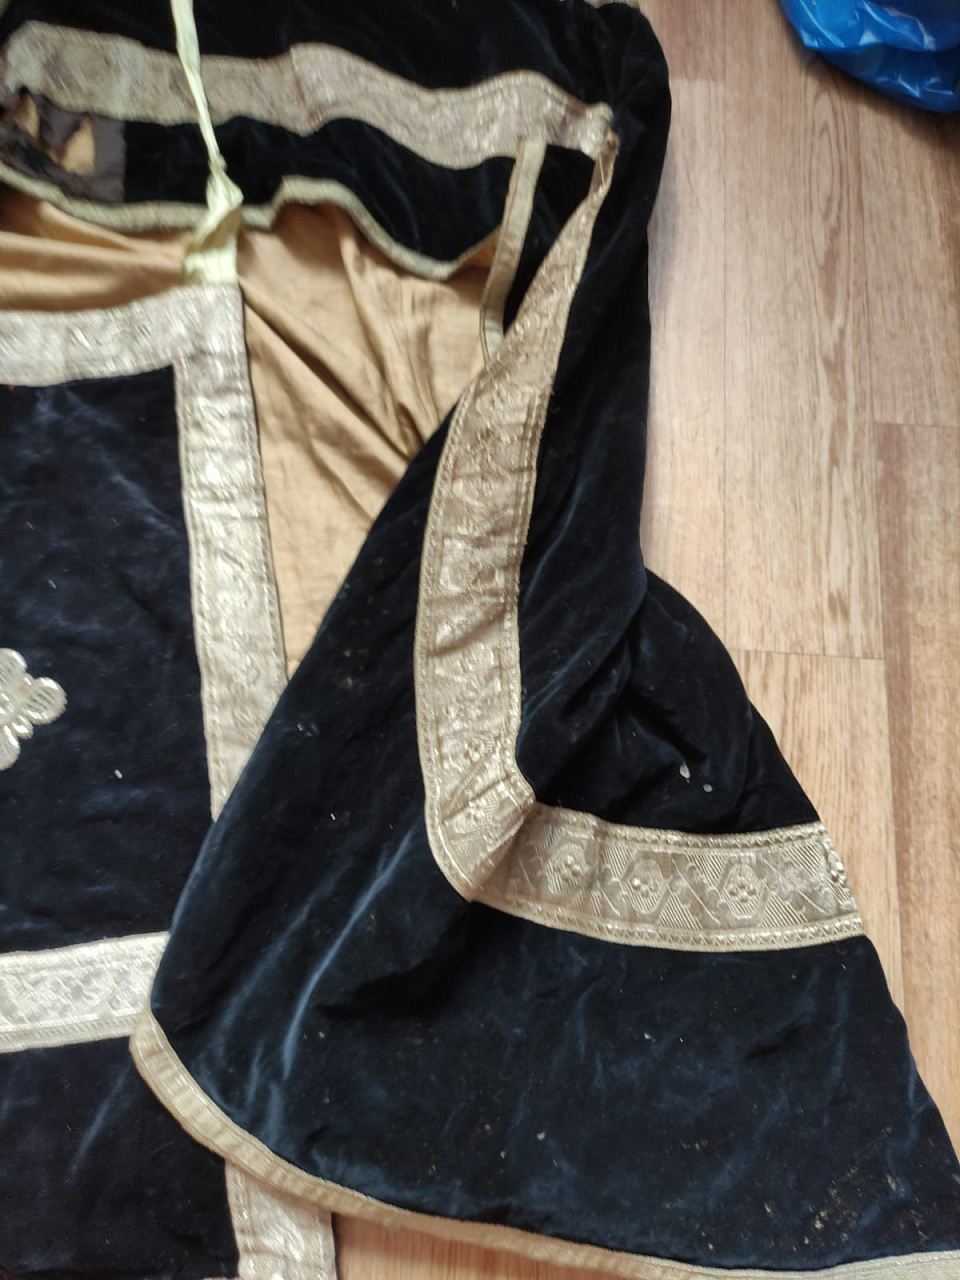 облачение священника, риза, епитрахиль, фелонь, 19 век  фото 6